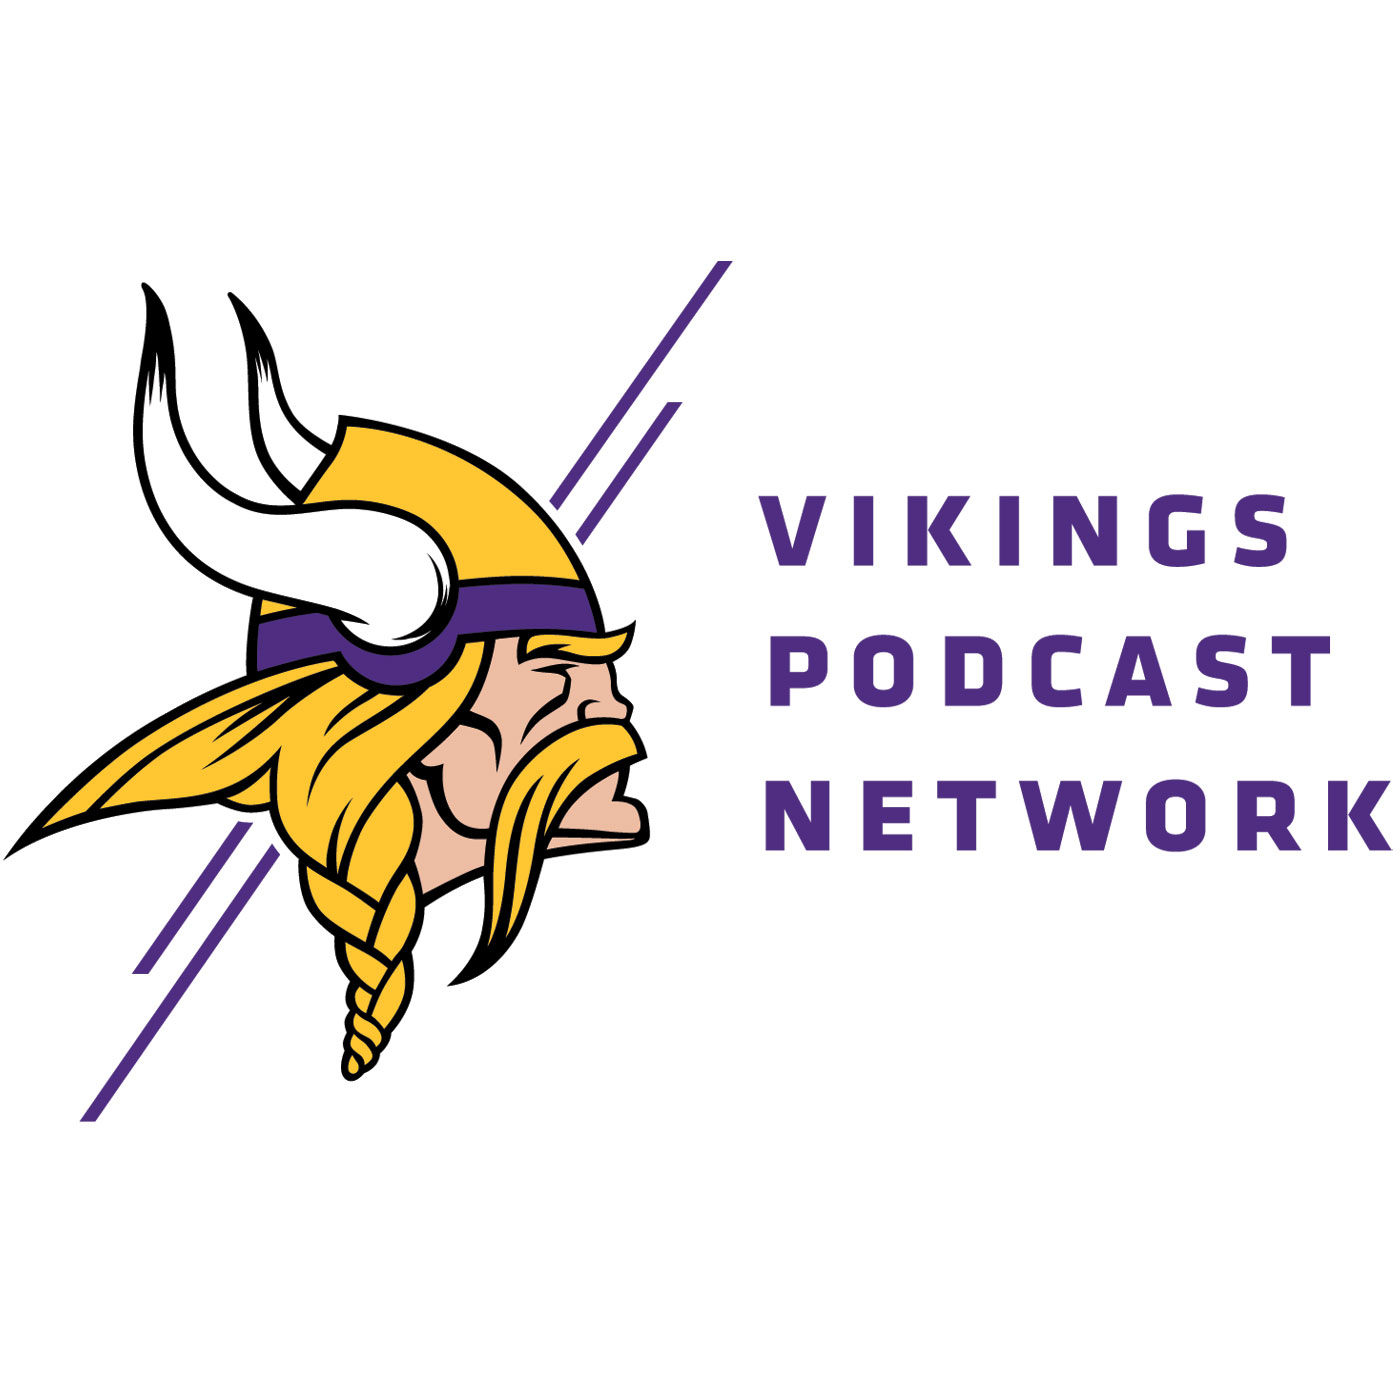 Minnesota Vikings Podcast: NFL Network's Tom Pelissero Joins for the 2020 Vikings Season Recap | Episode 75